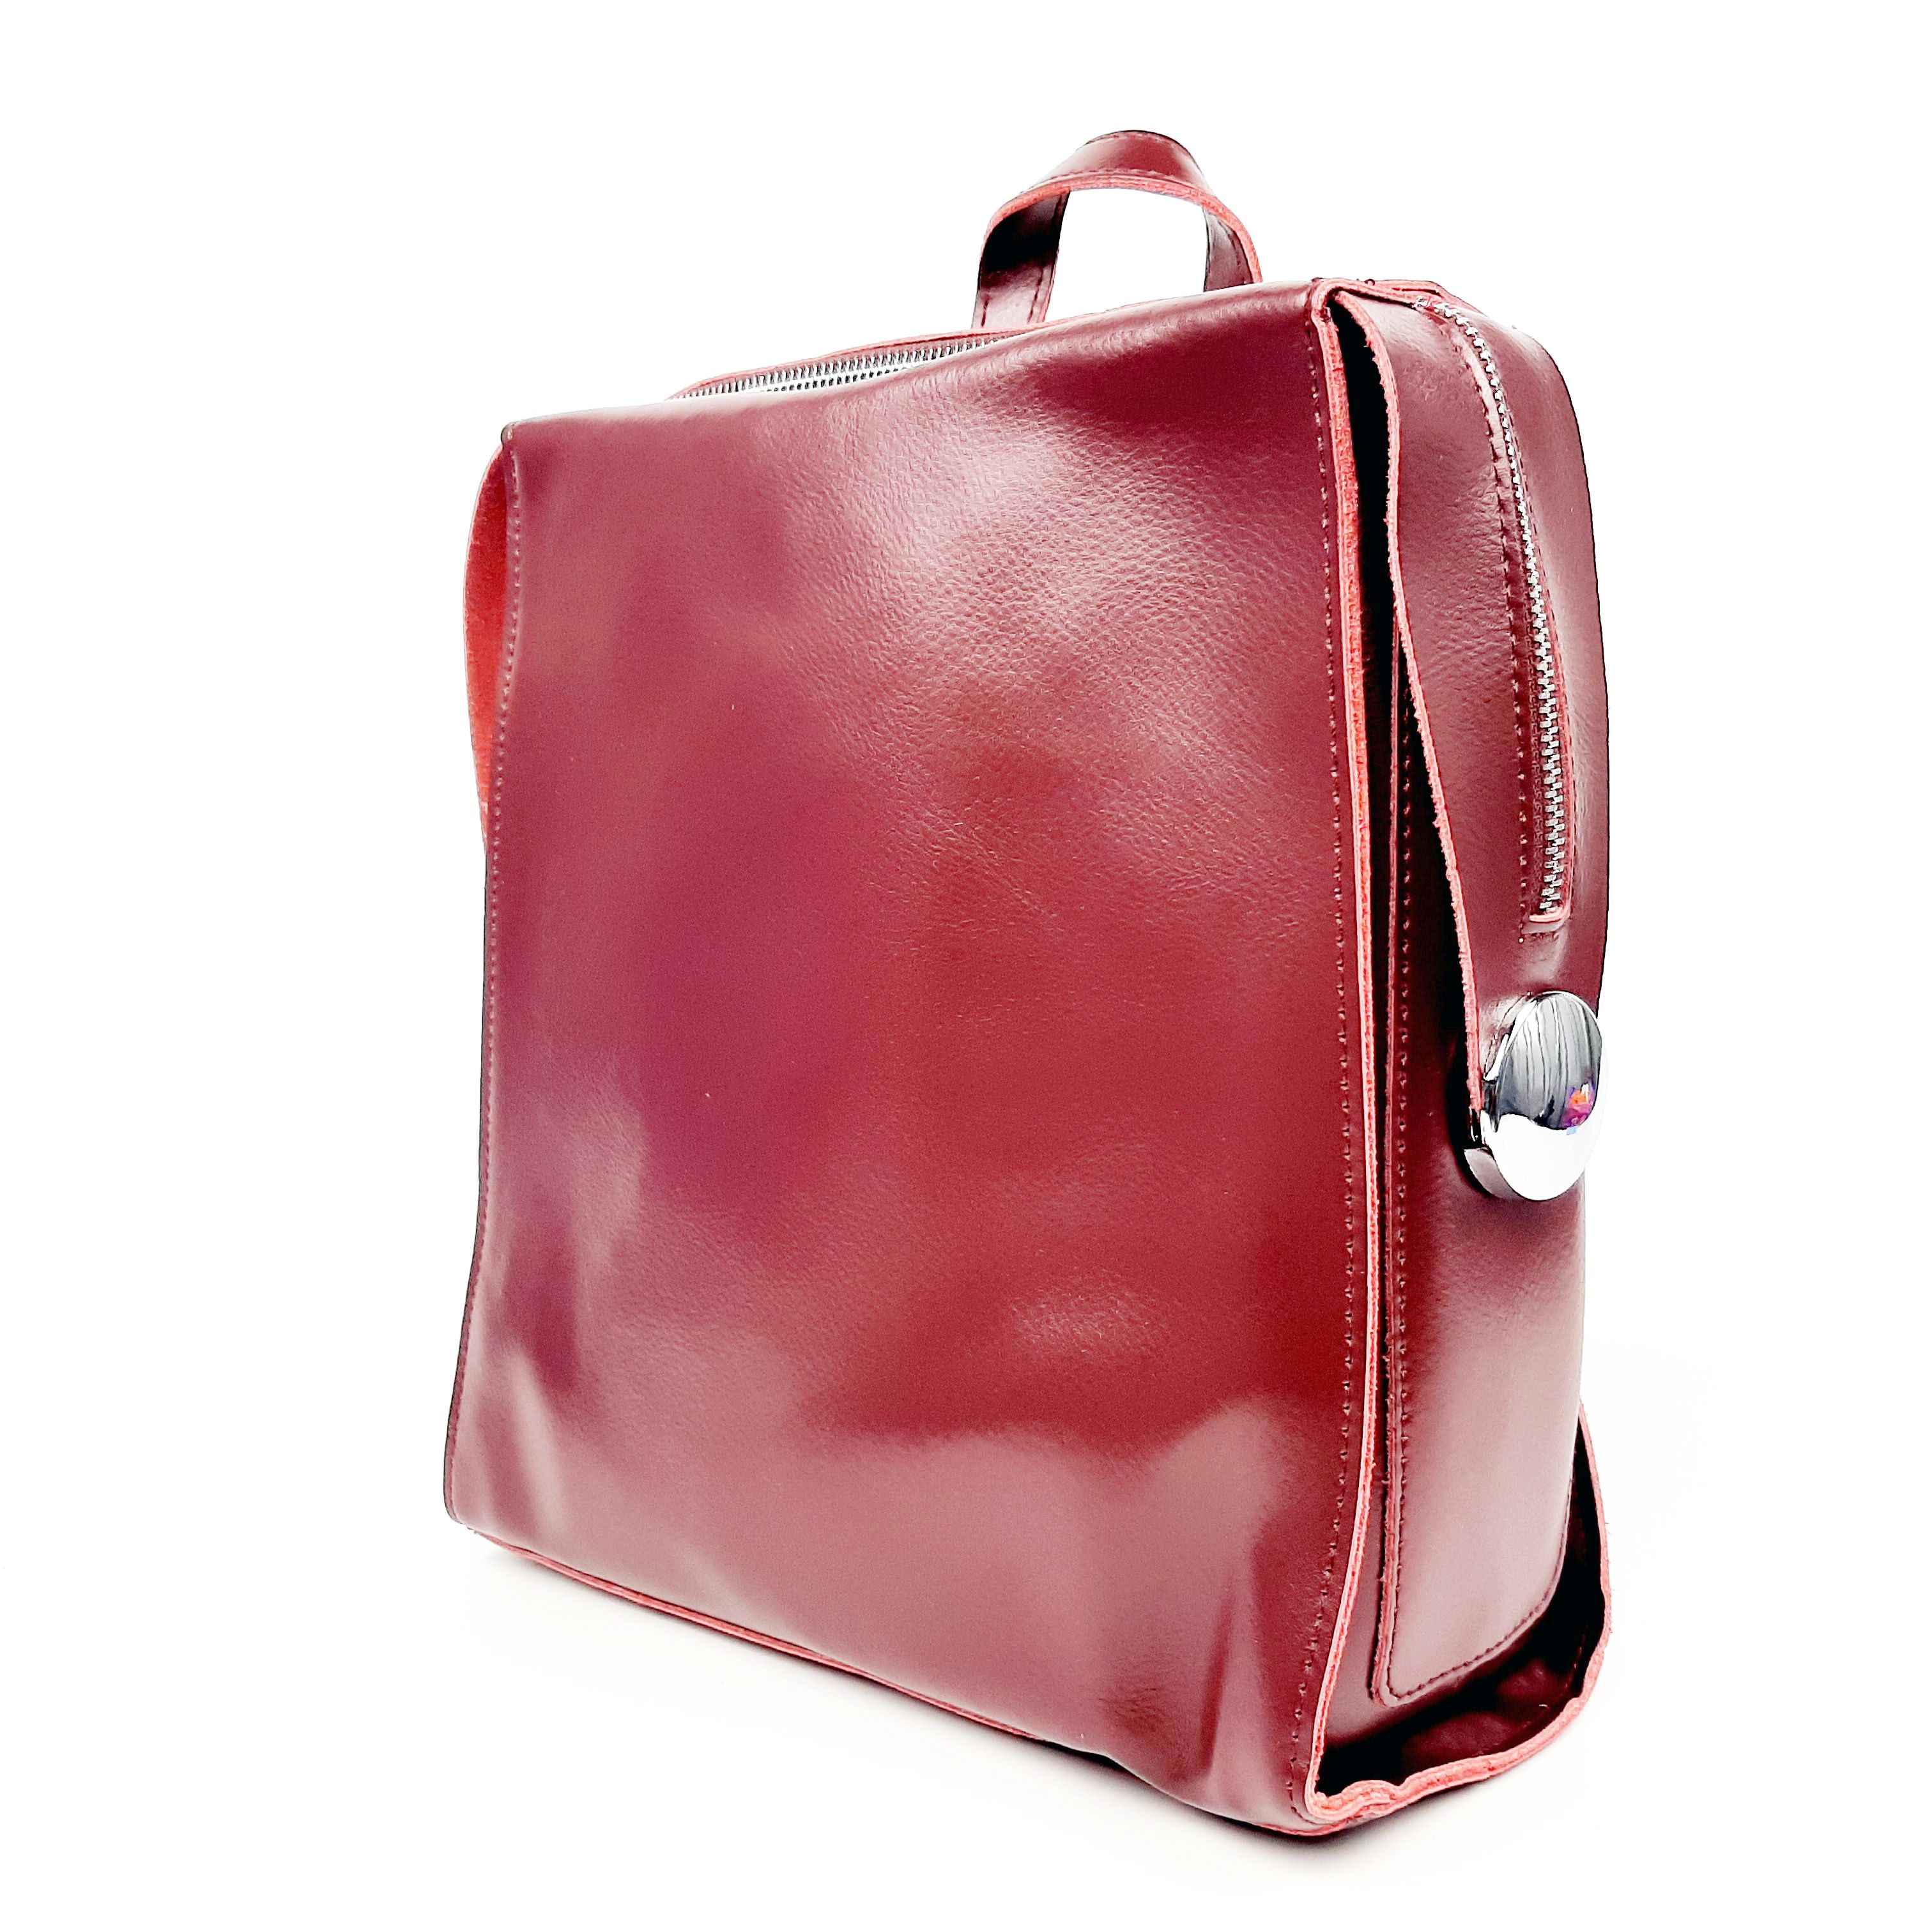 Сумка-рюкзак женская Fuzi house 85018 красная, 10х27х25 см